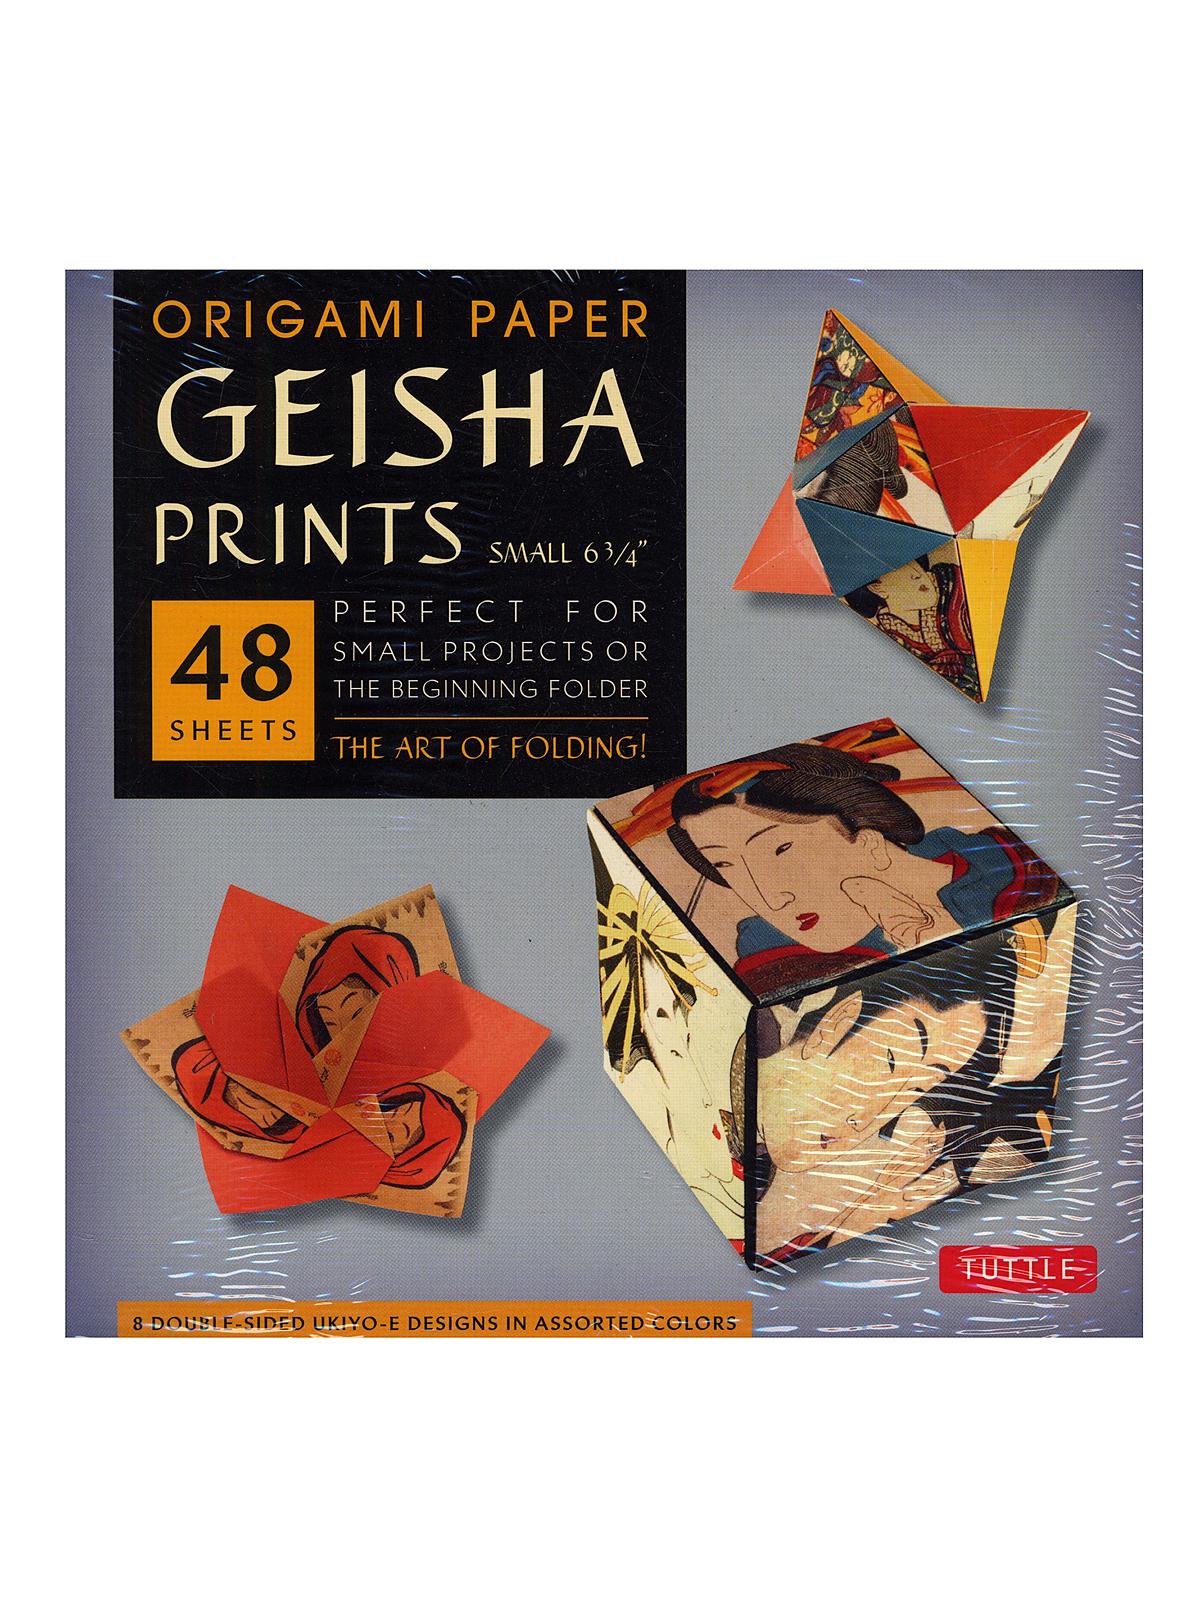 Origami Paper Geisha Prints Small